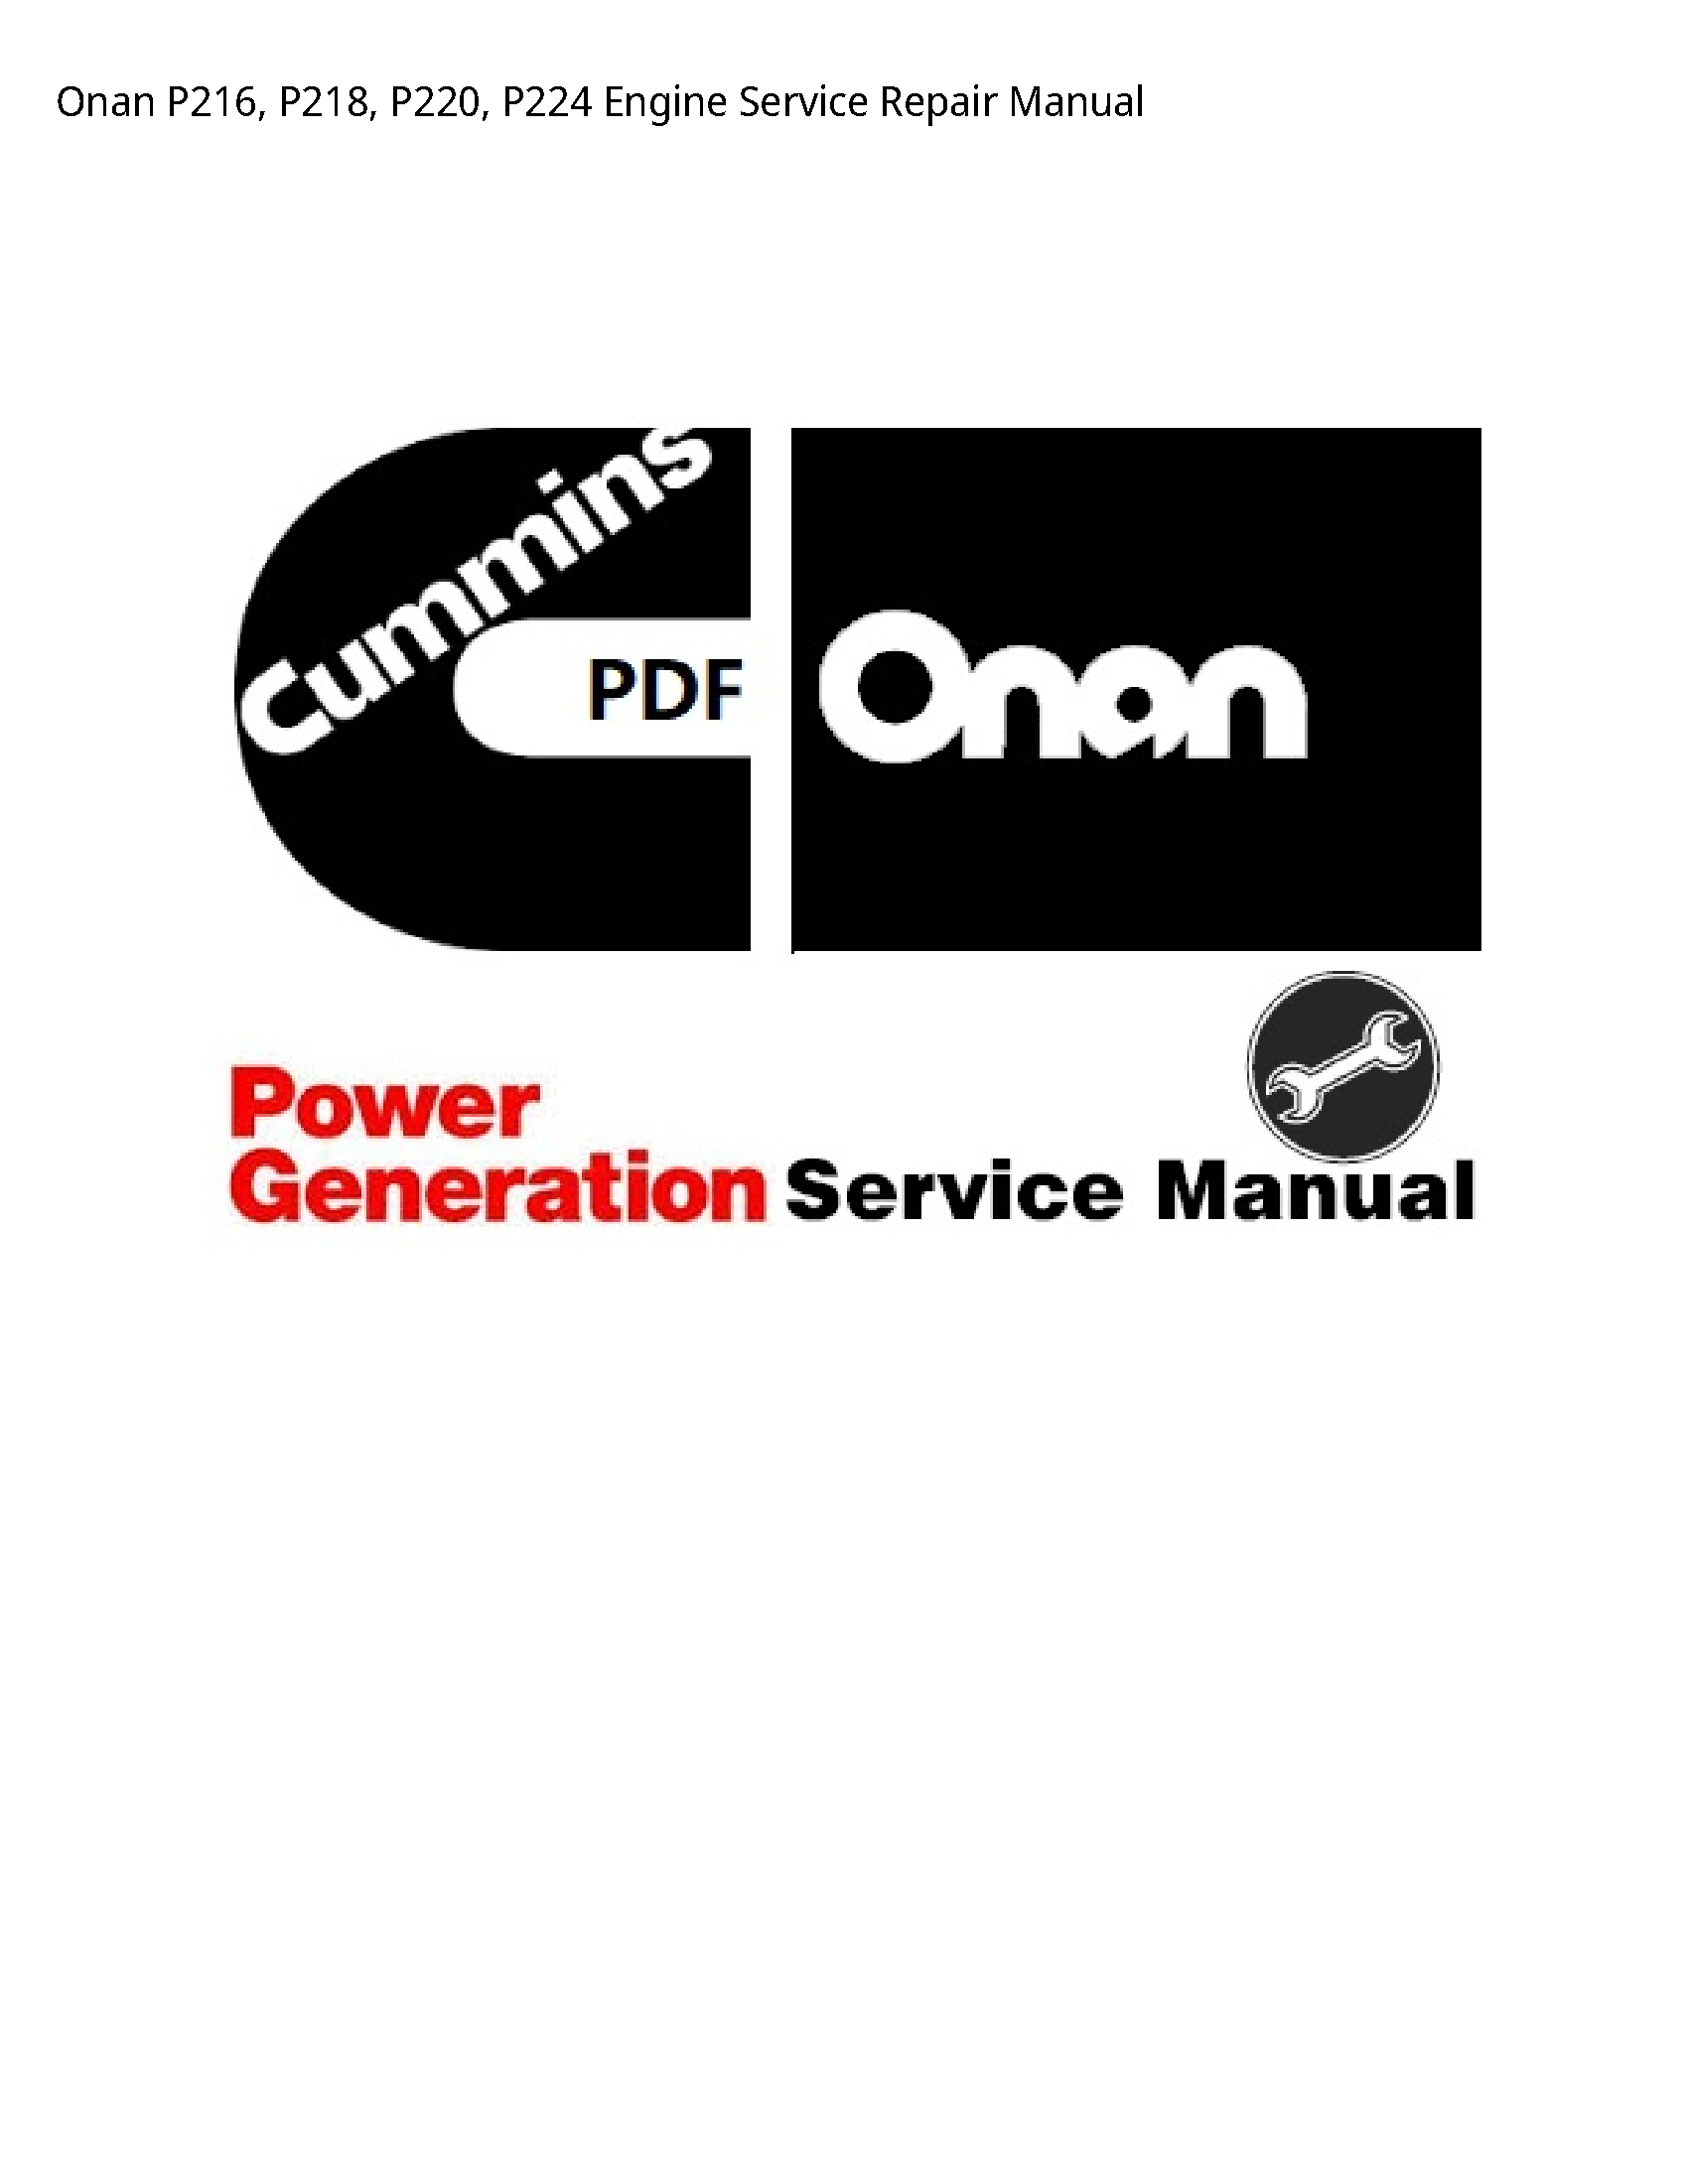 Onan P216 Engine manual